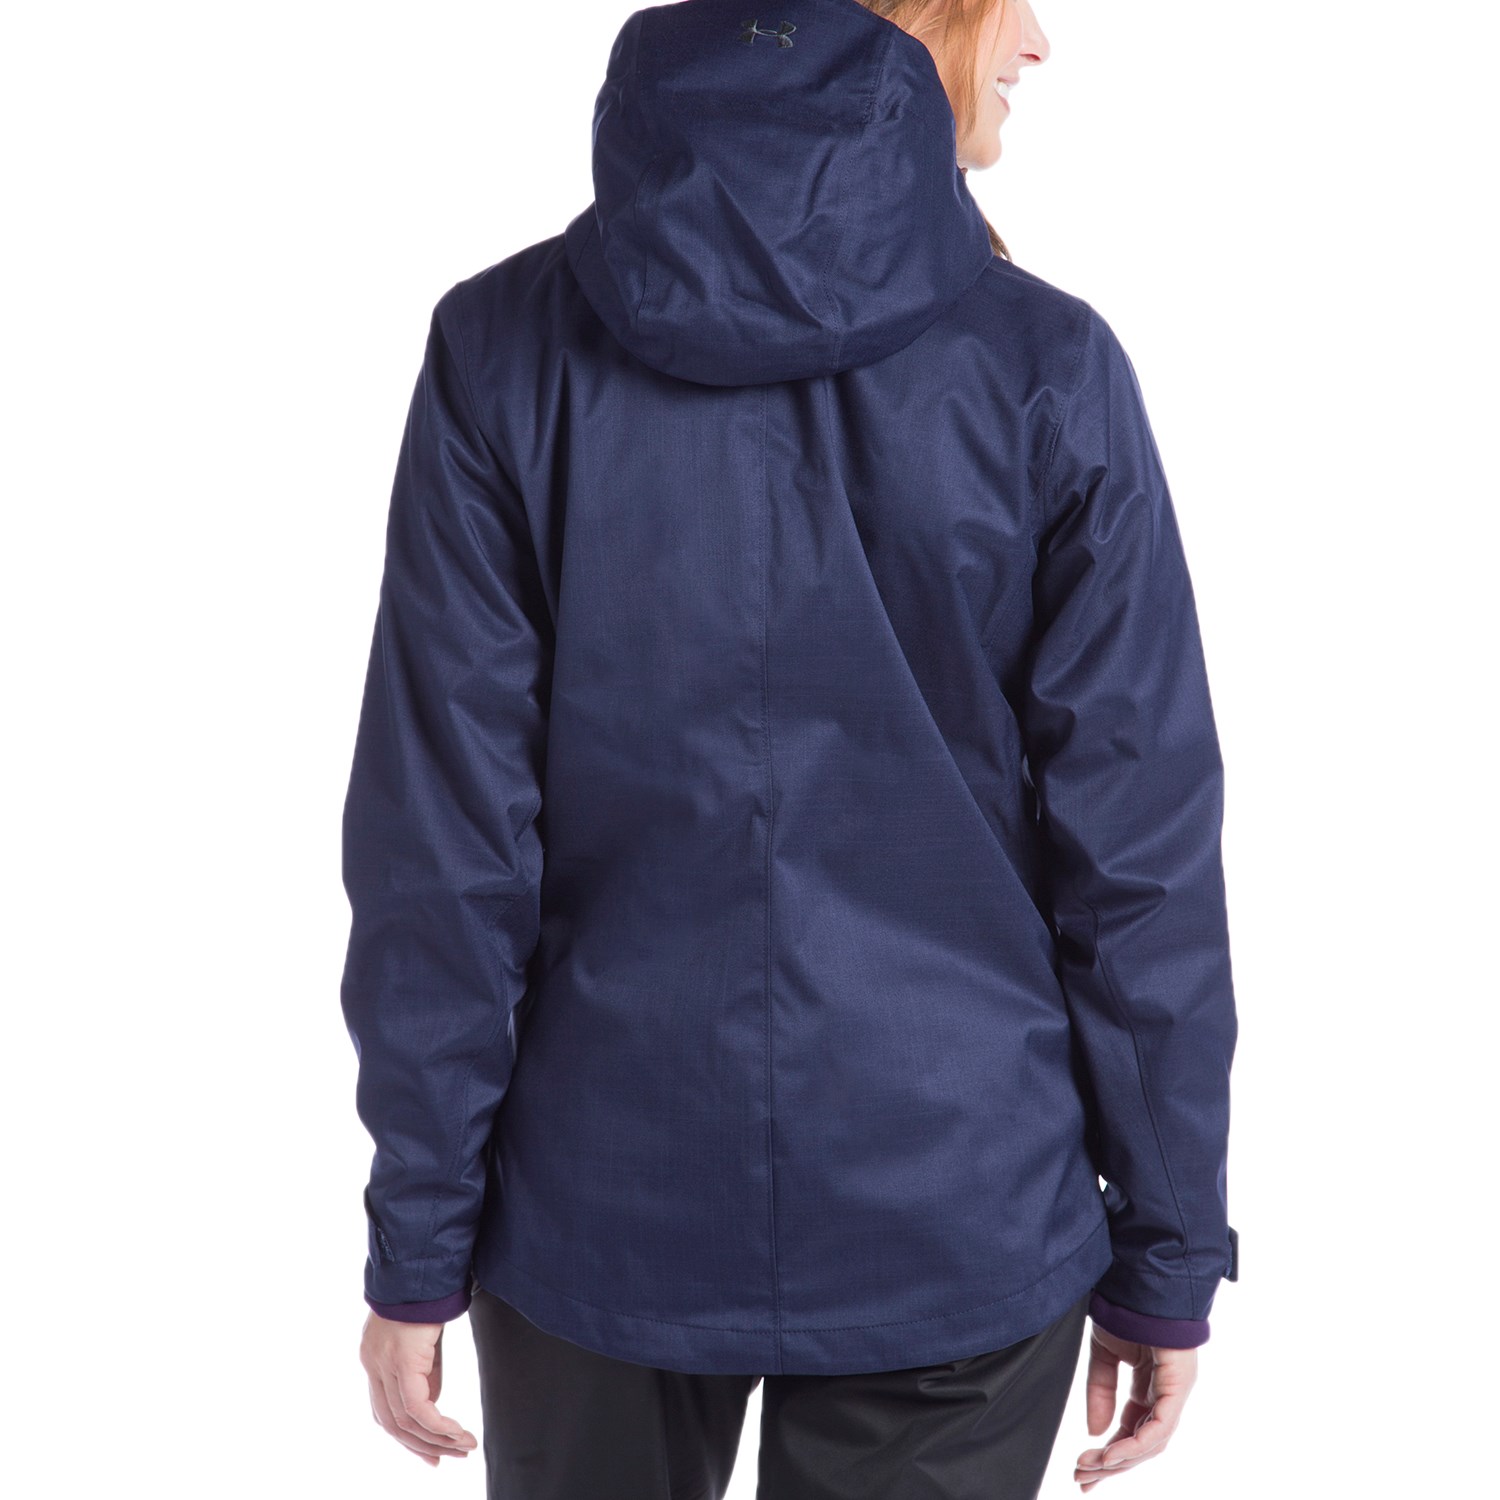 Under Armour Women's UA ColdGear Infrared Sienna 3-In-1 Jacket XL